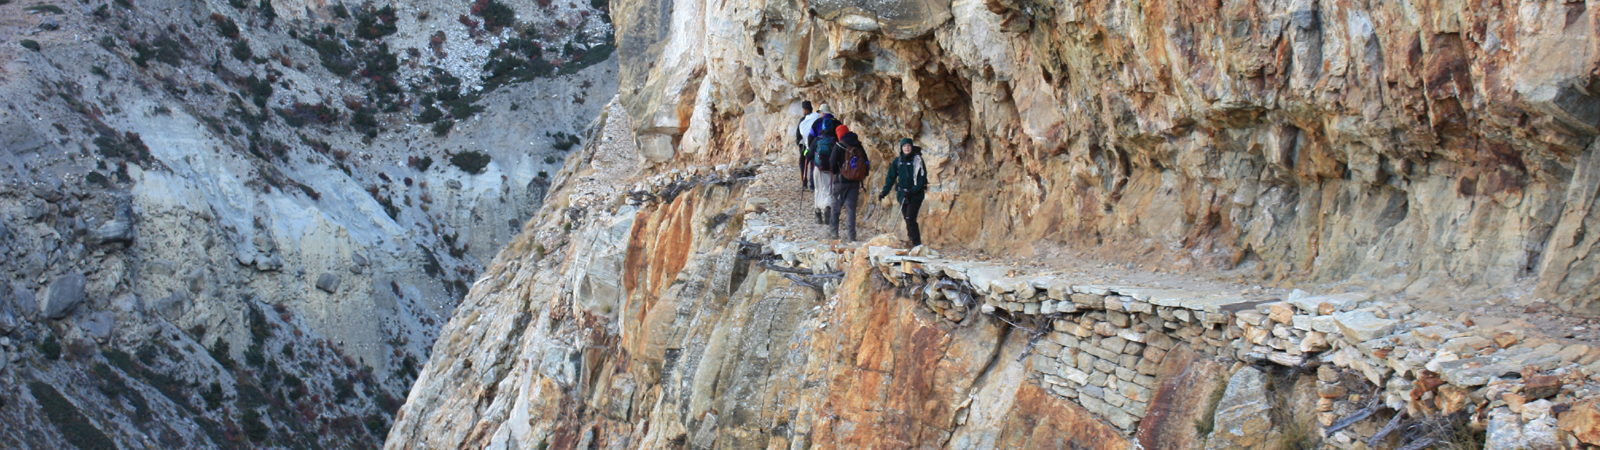 Norphu Valley and Thorang Pass Trek